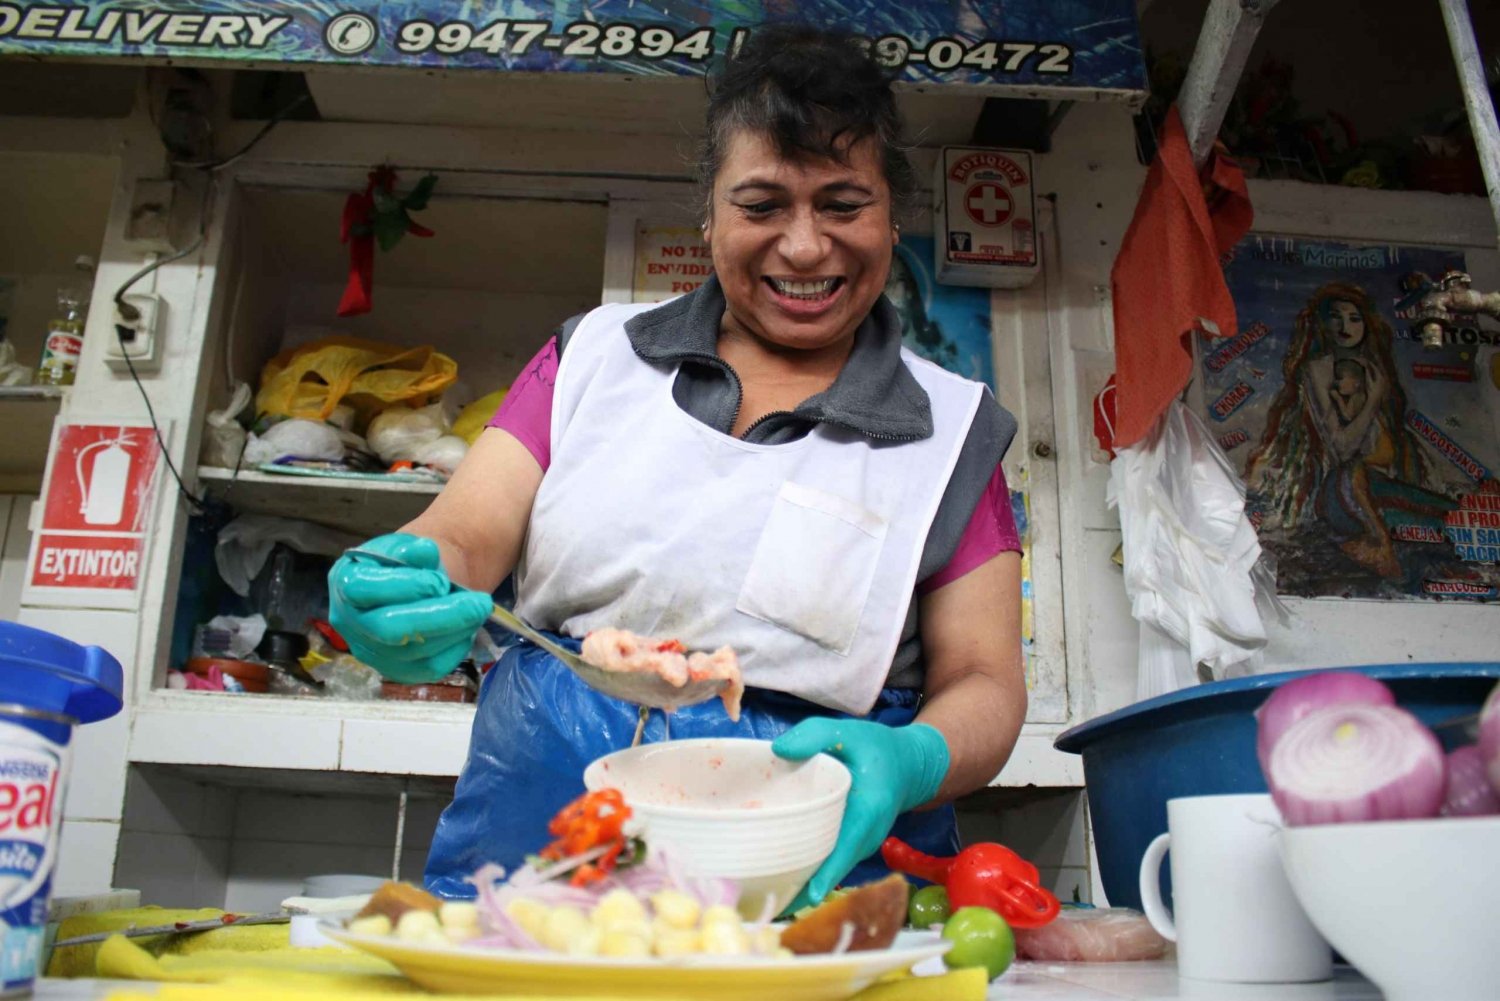 Wycieczka kulinarna do Limy przez lokalne targi i wizyta w Barranco